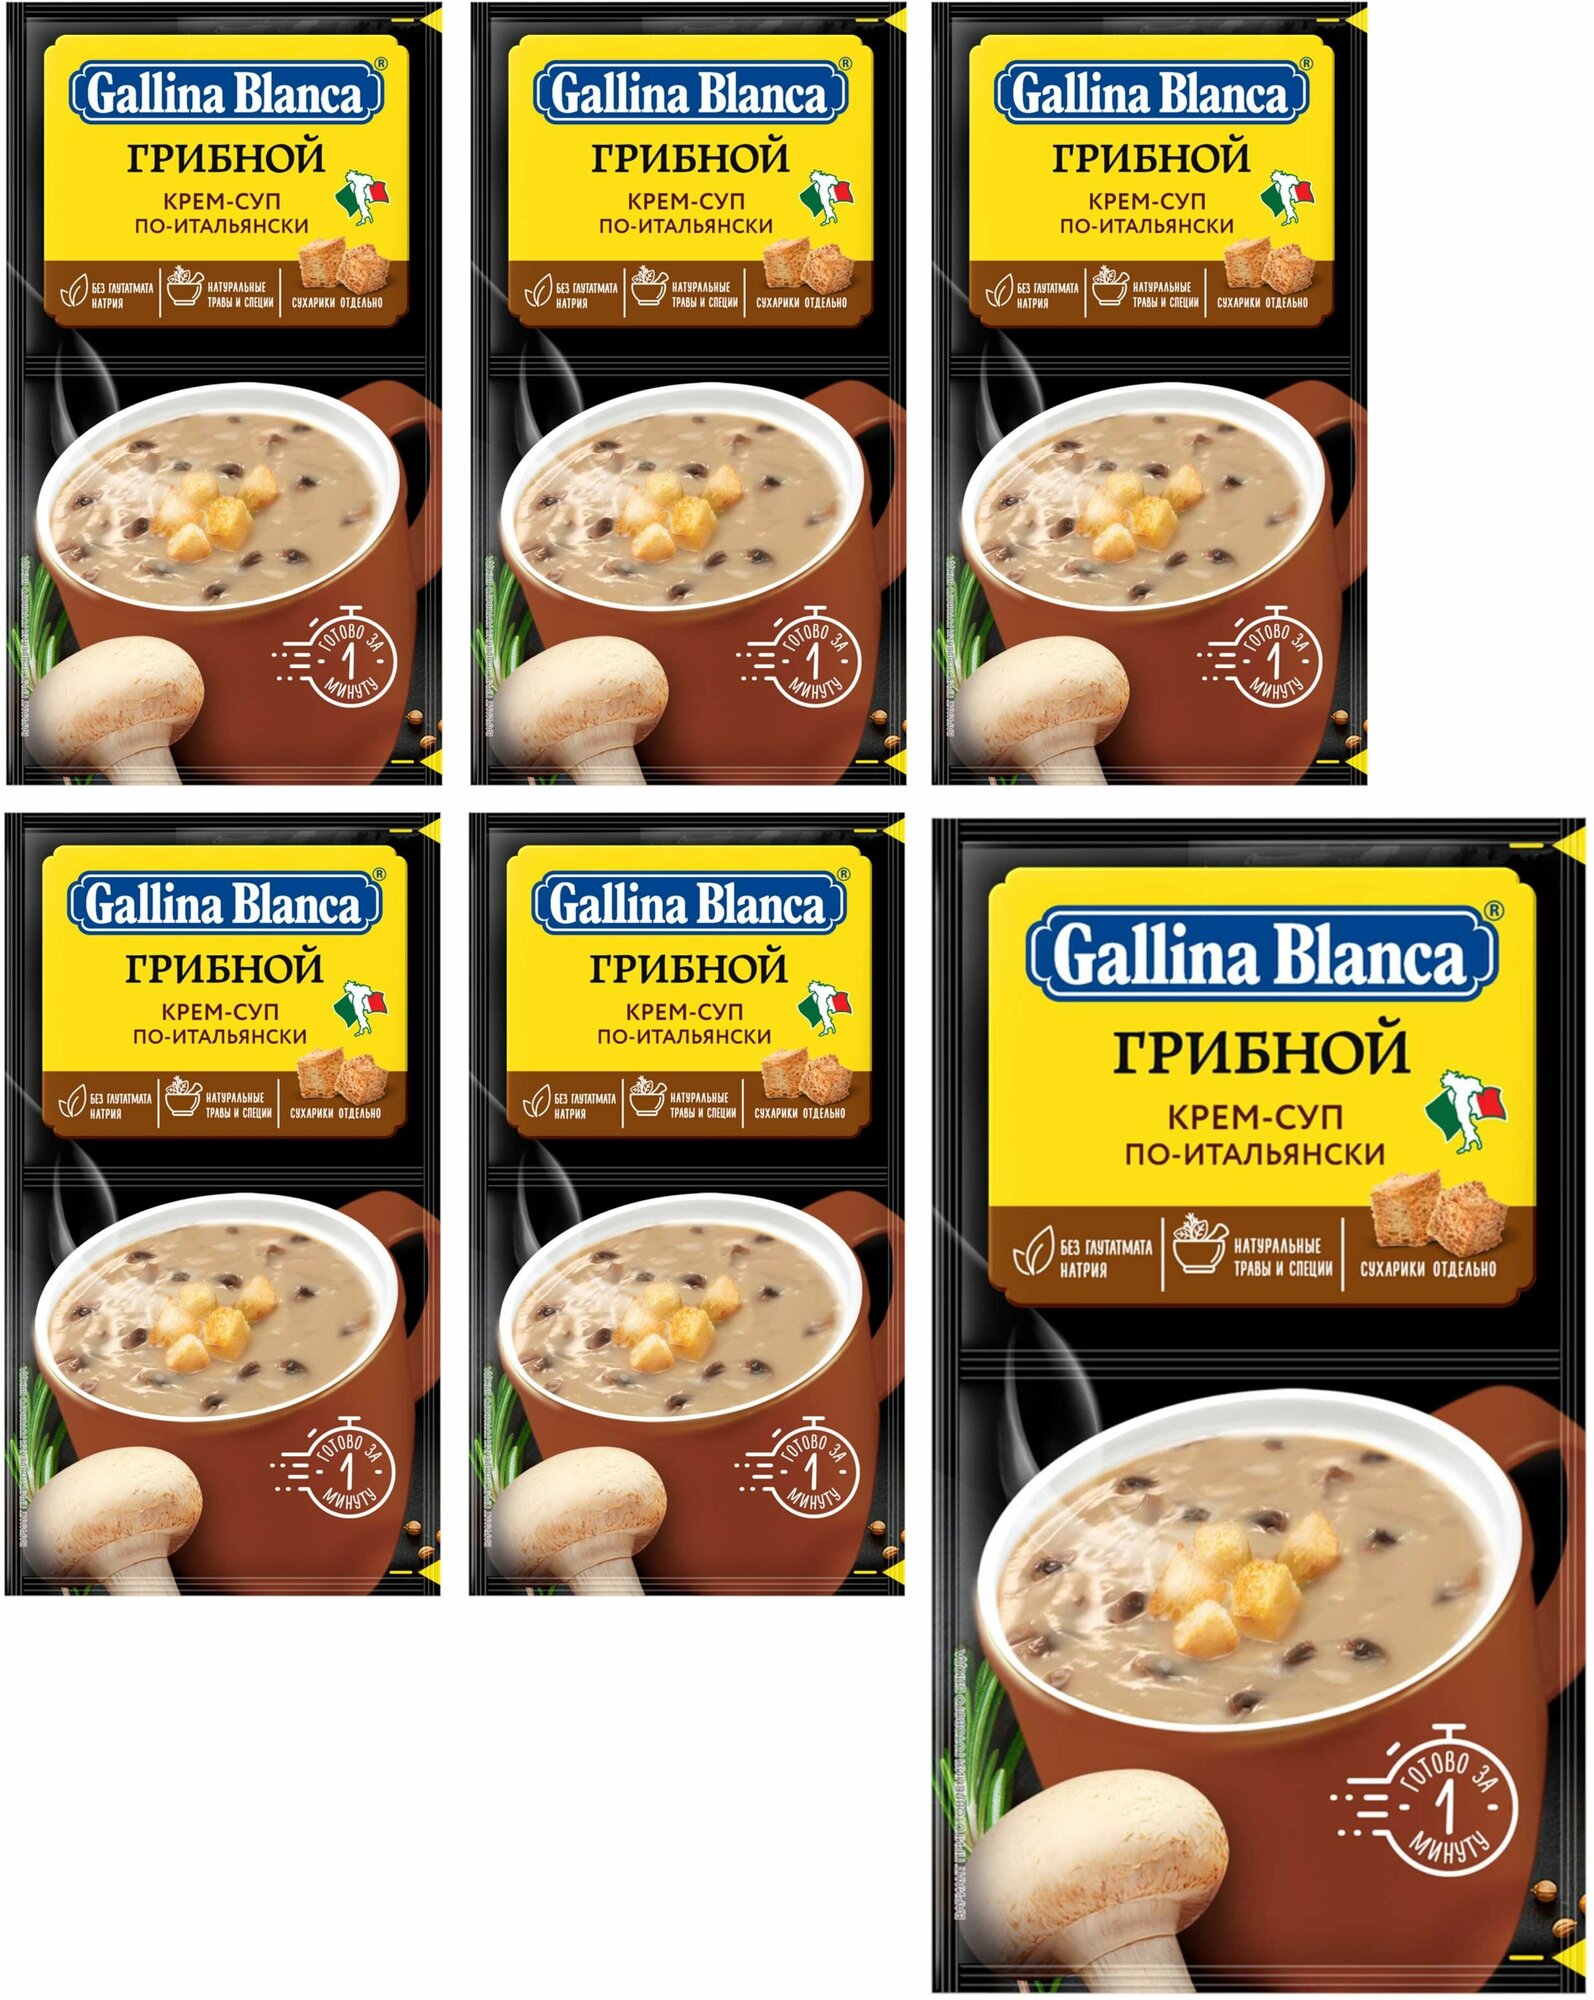 Суп быстрого приготовления, "Gallina Blanca", "Крем-суп 2 в 1", "Грибной по-итальянски", 23г 6 шт